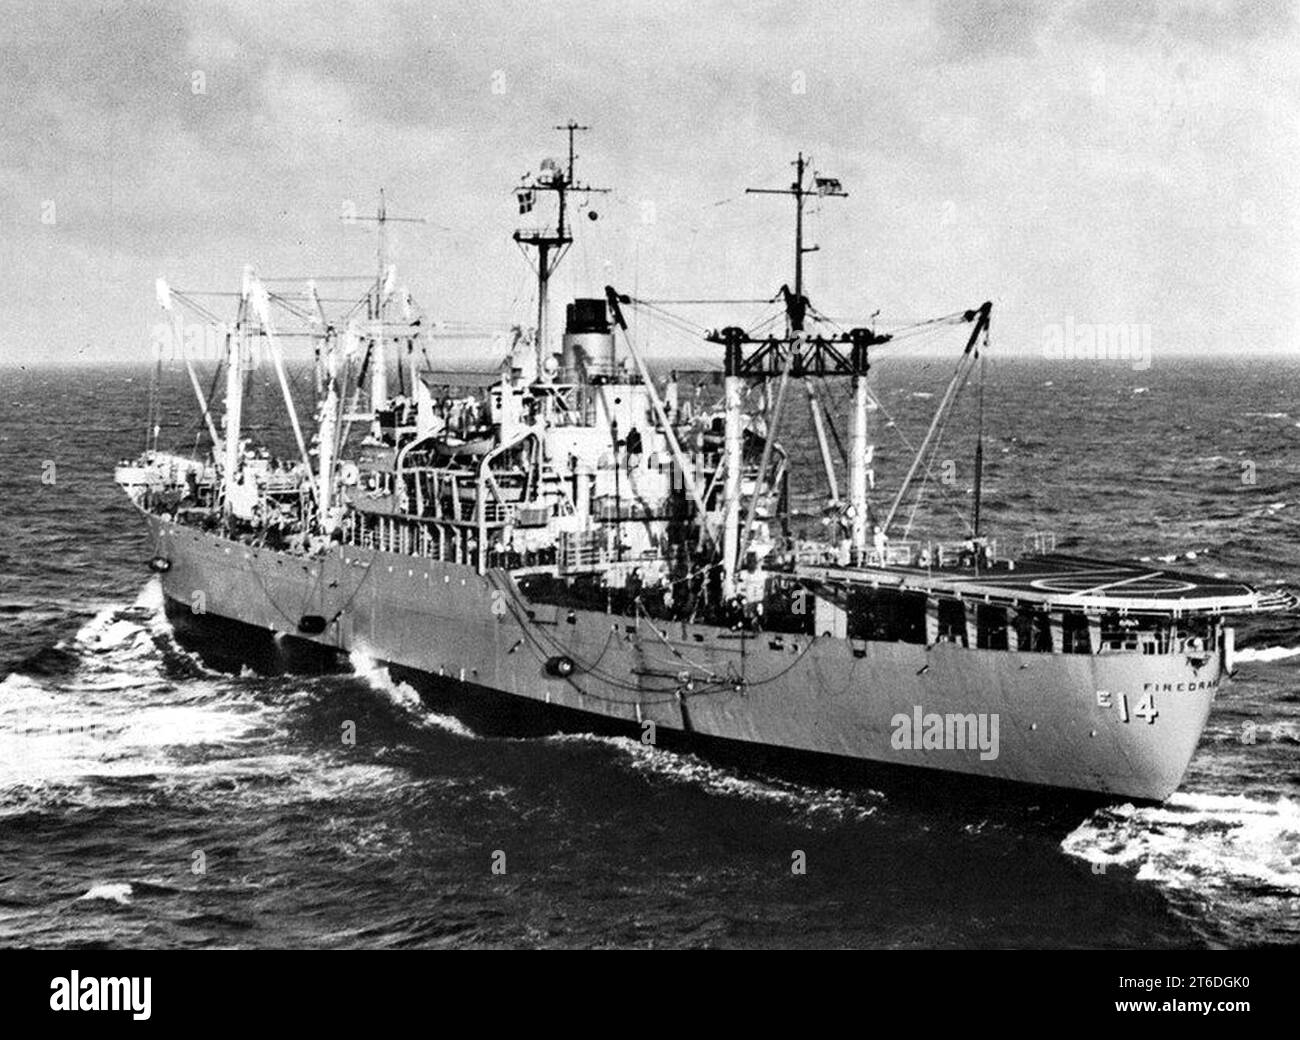 USS Firedrake (AE-14) off Vietnam c1965 Stock Photo